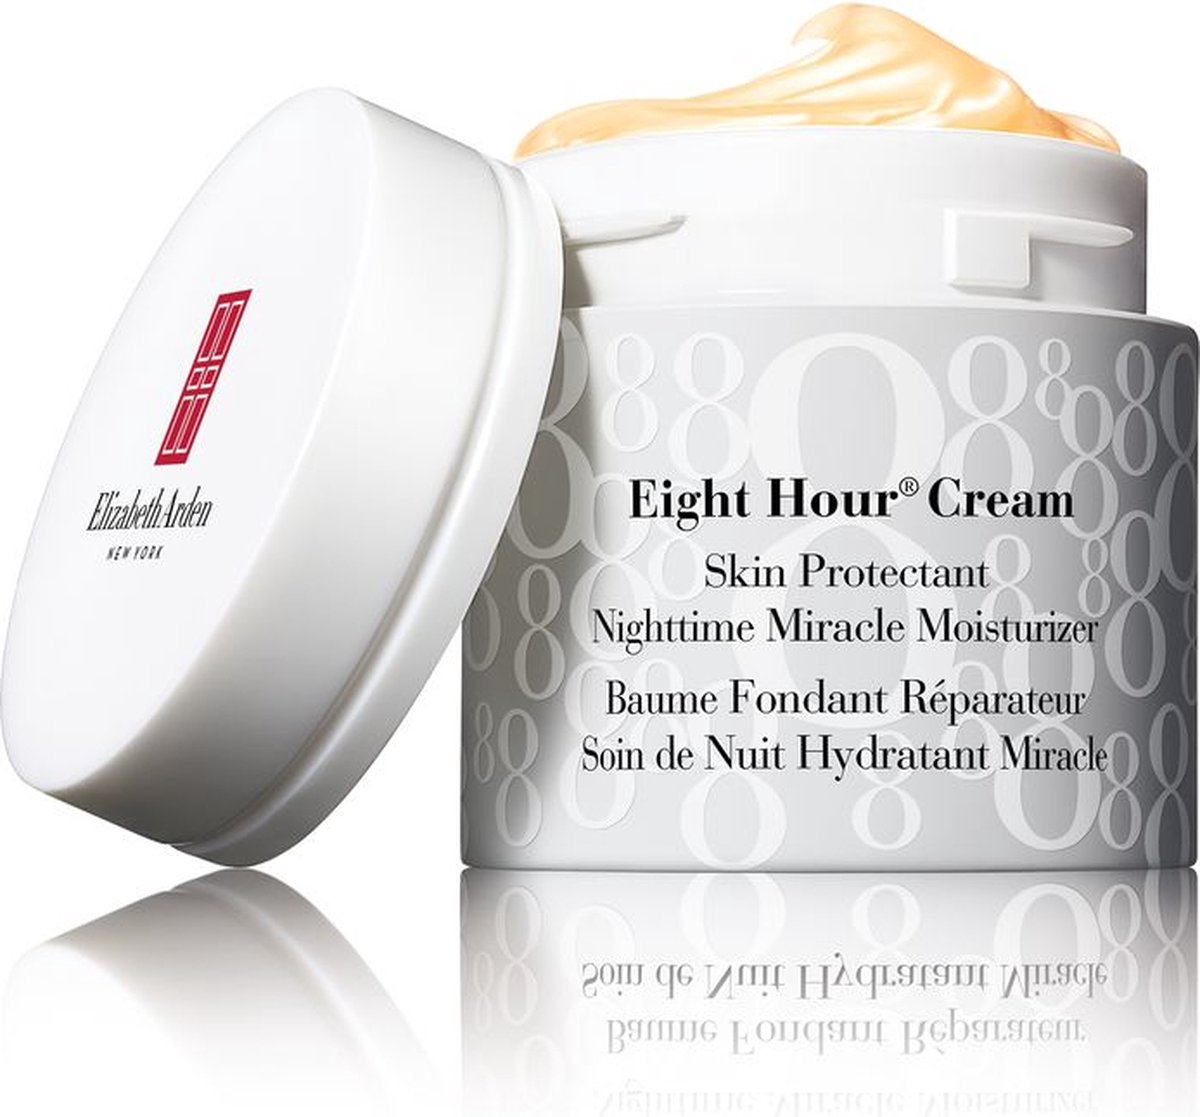 Elizabeth Arden Eight Hour Cream Nightime Miracle Moisturizer 50ml - Elizabeth Arden